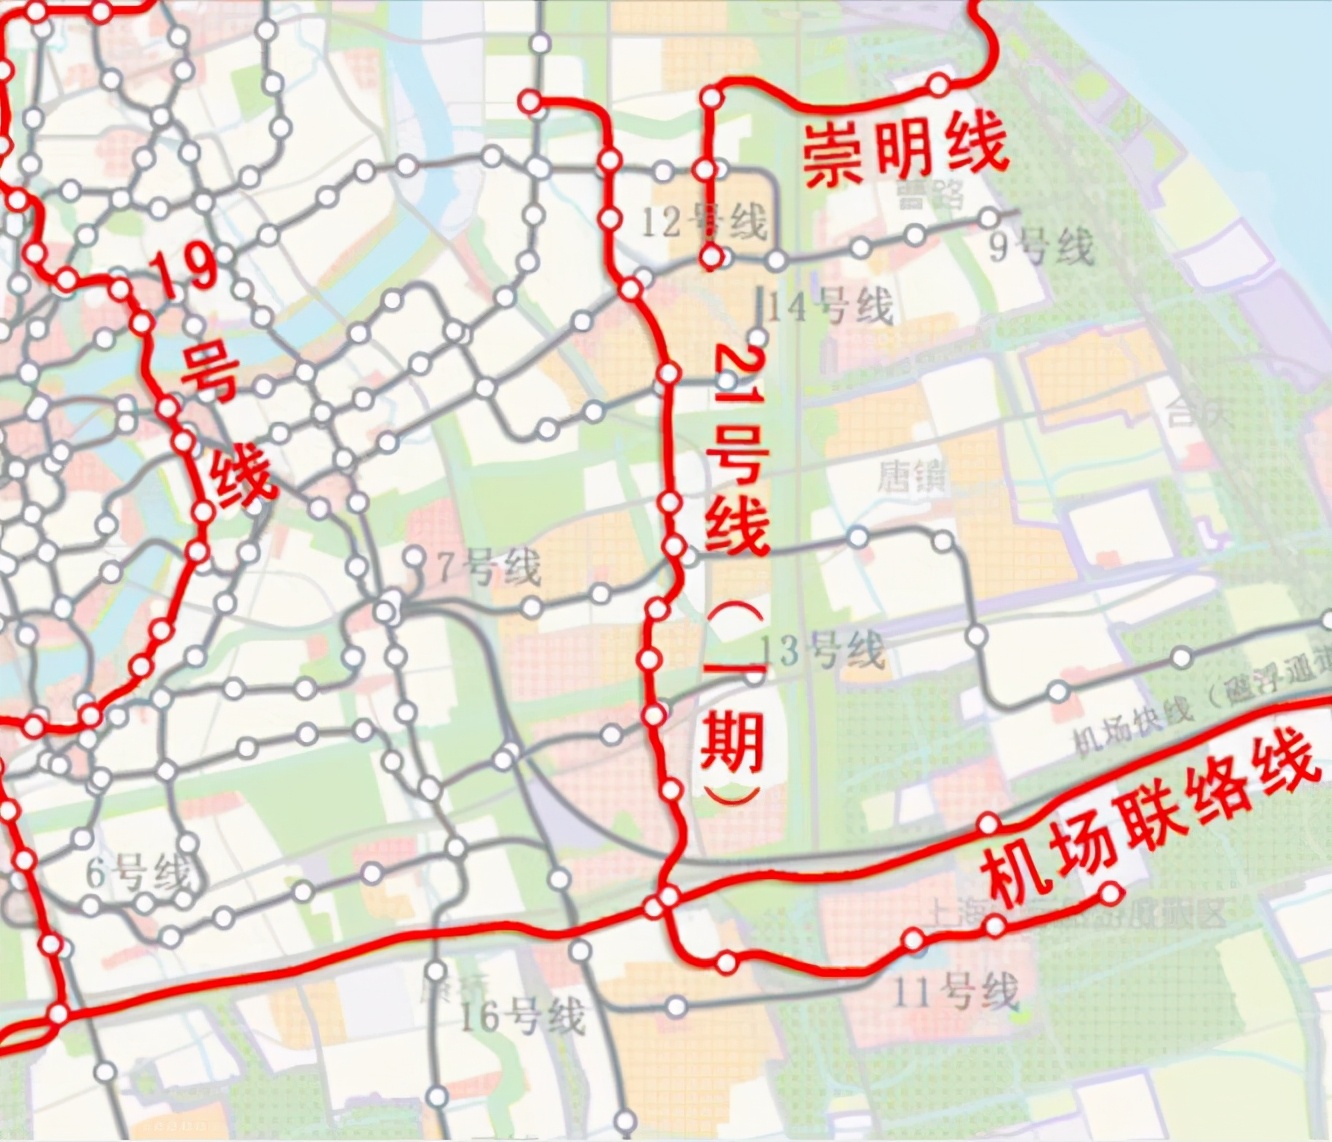 上海地铁21号线路图图片